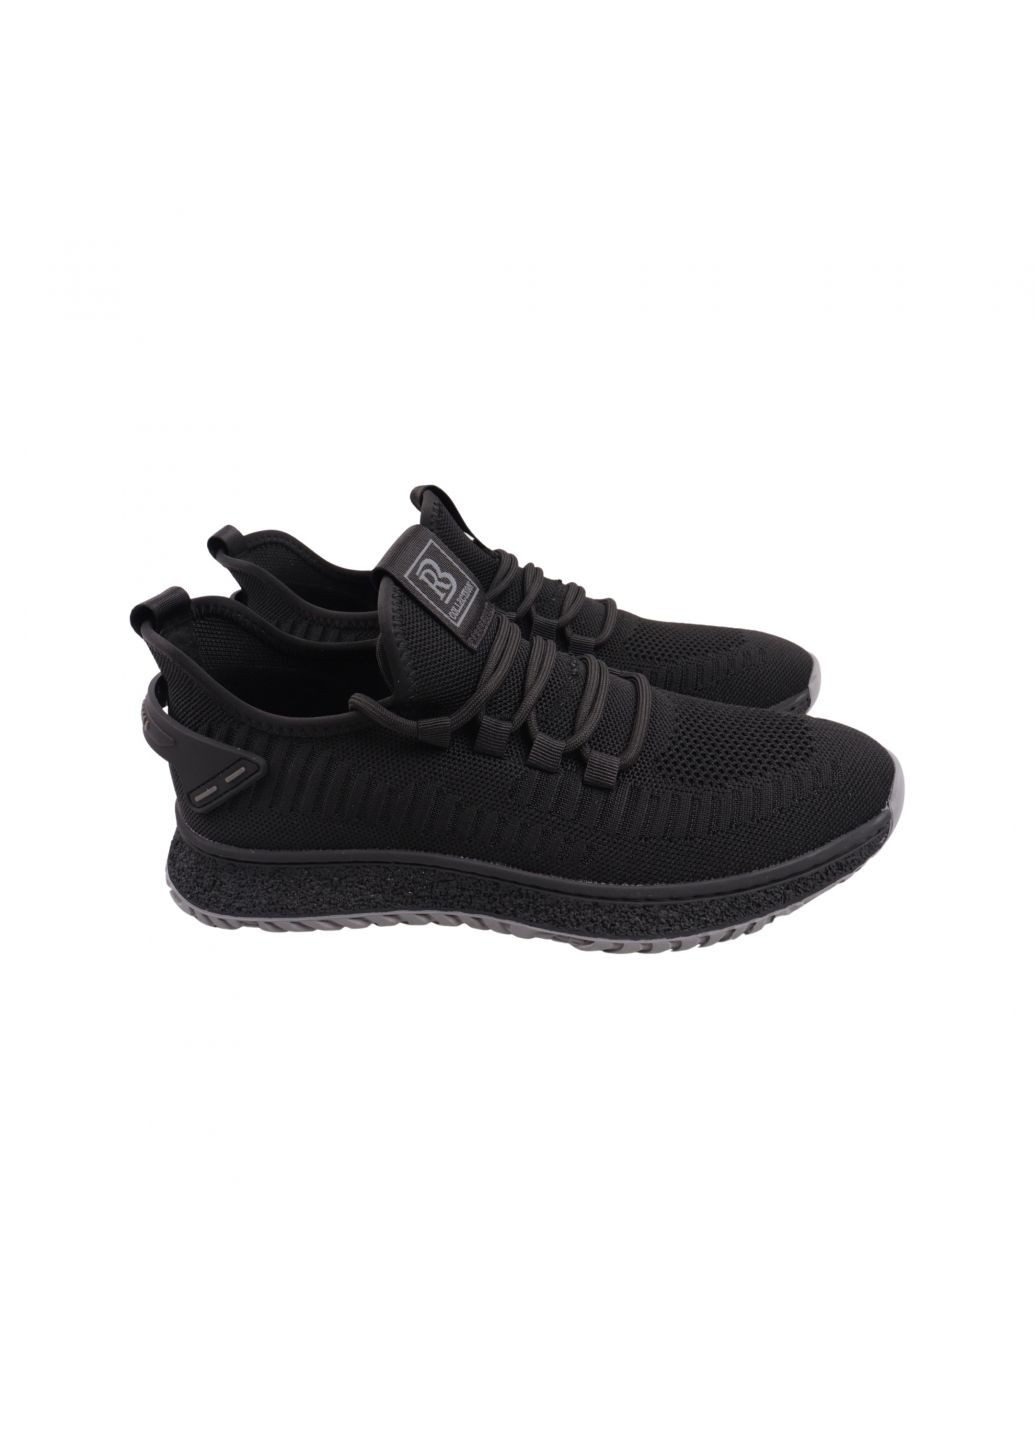 Чорні кросівки чоловічі чорні текстиль Berisstini 177-23LK